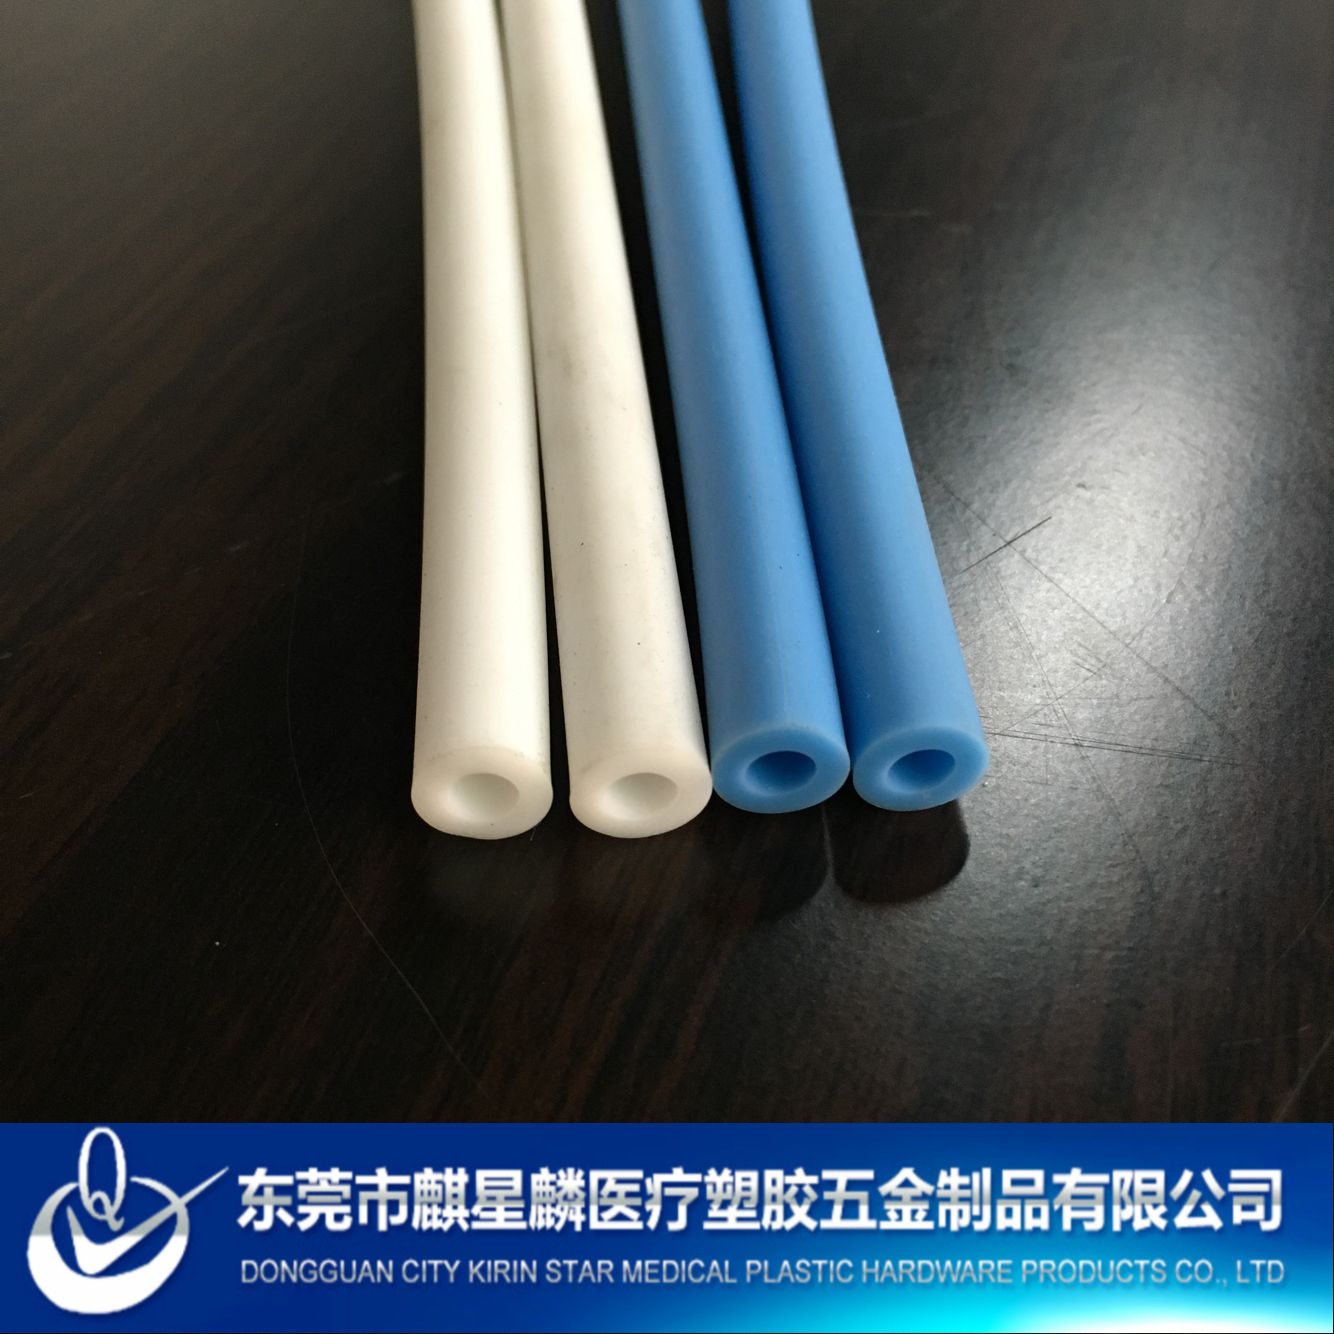 本廠生產PVC塑膠管  PVC血壓計管 PVC實心條  可免費看樣